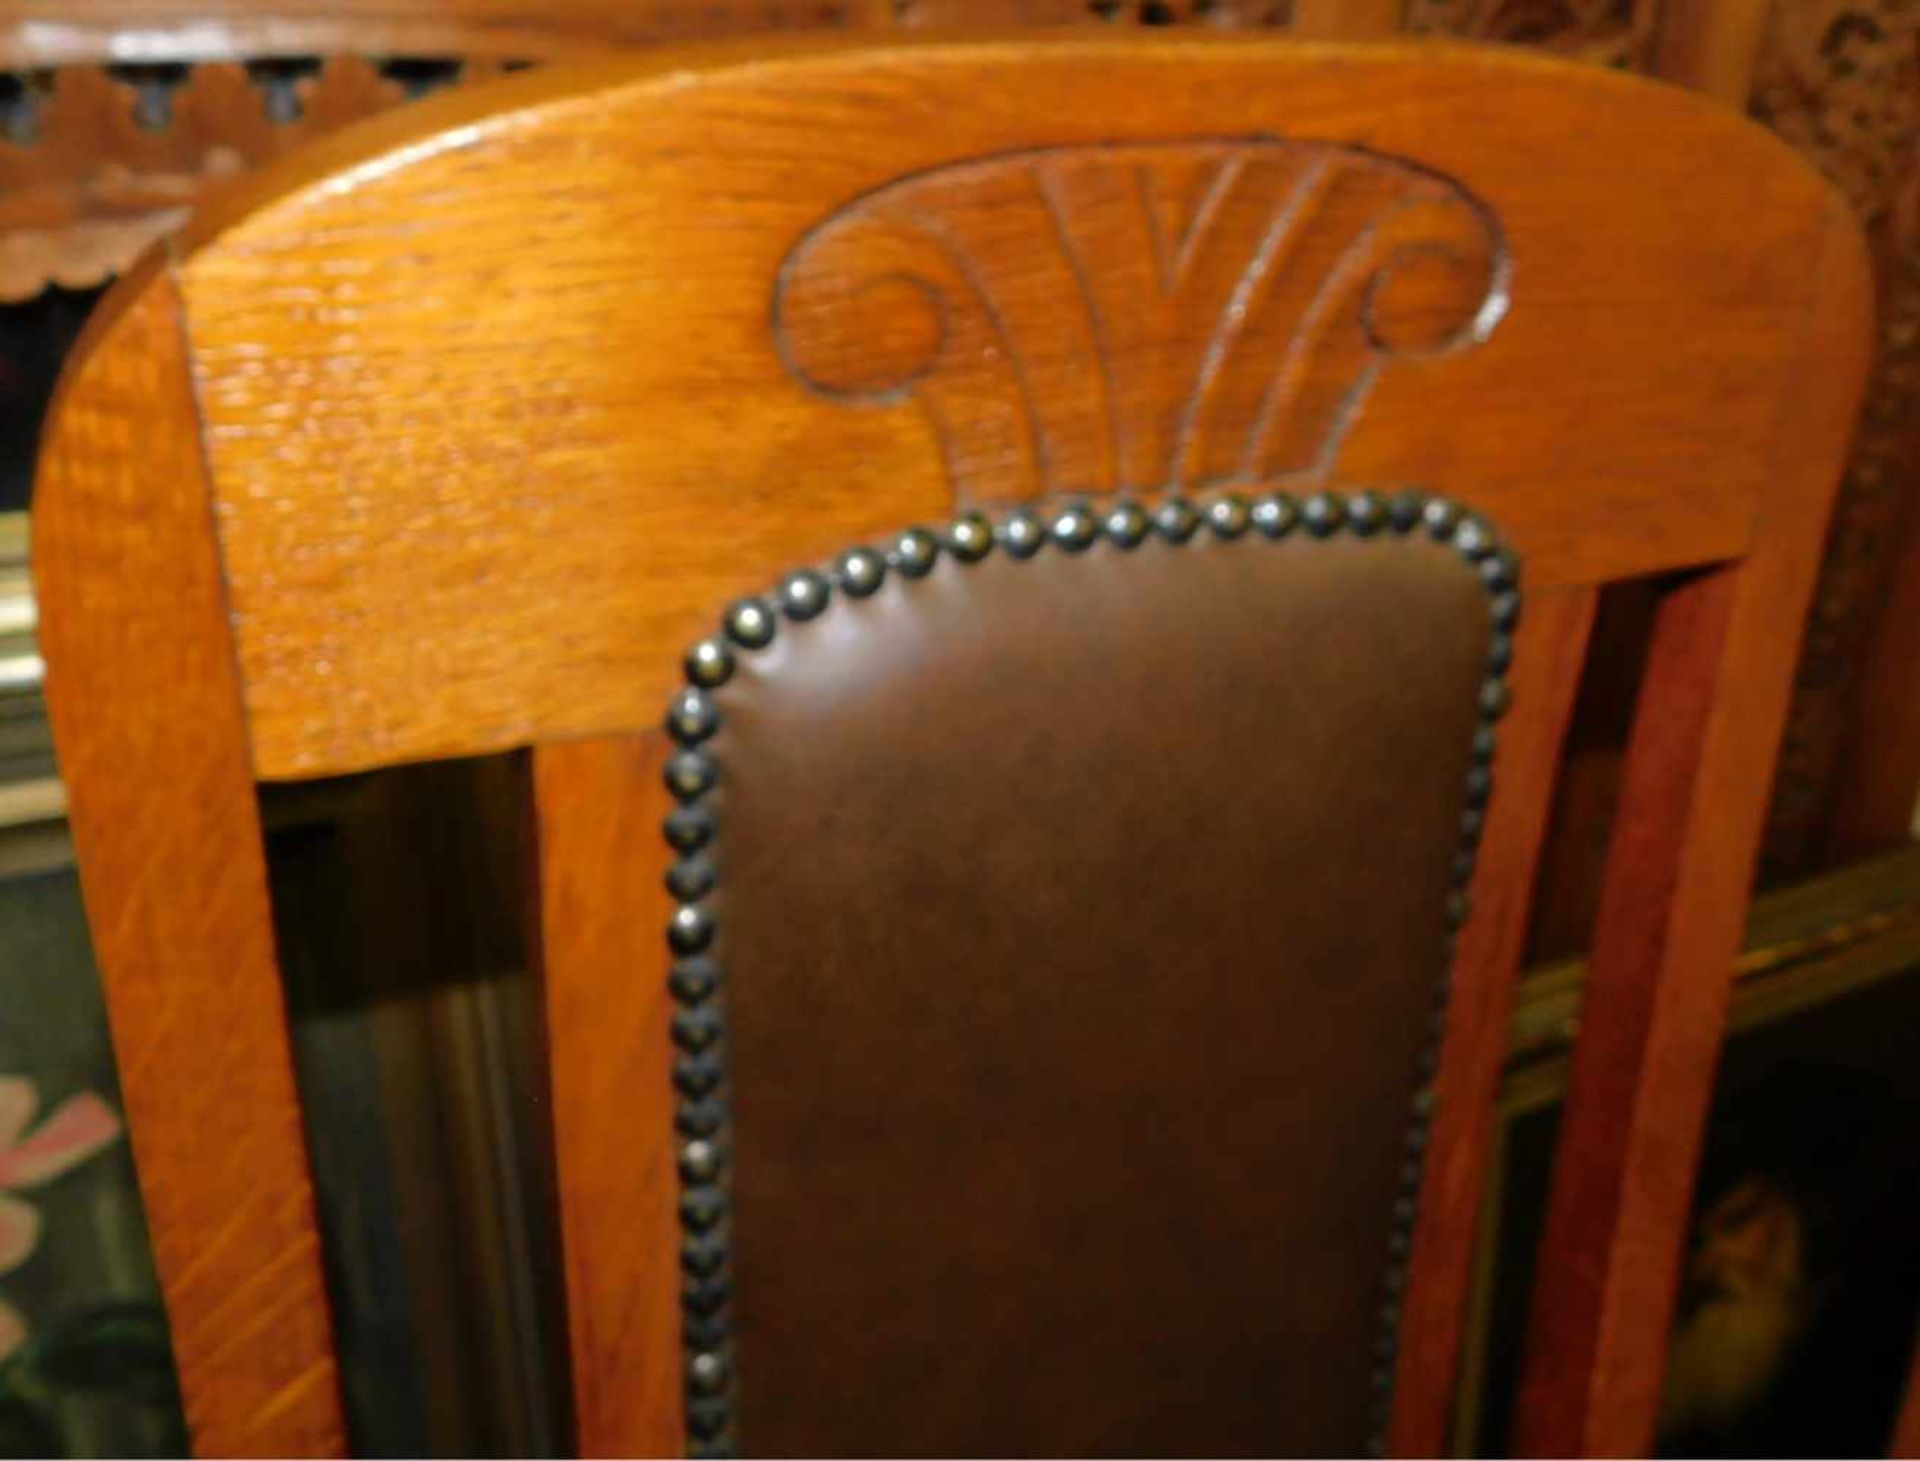 4 Stühle, Eiche, Jugendstil um 1910, Lehne verziert, Polsterung fast neuwertig, 1 Stuhl nicht - Bild 4 aus 4